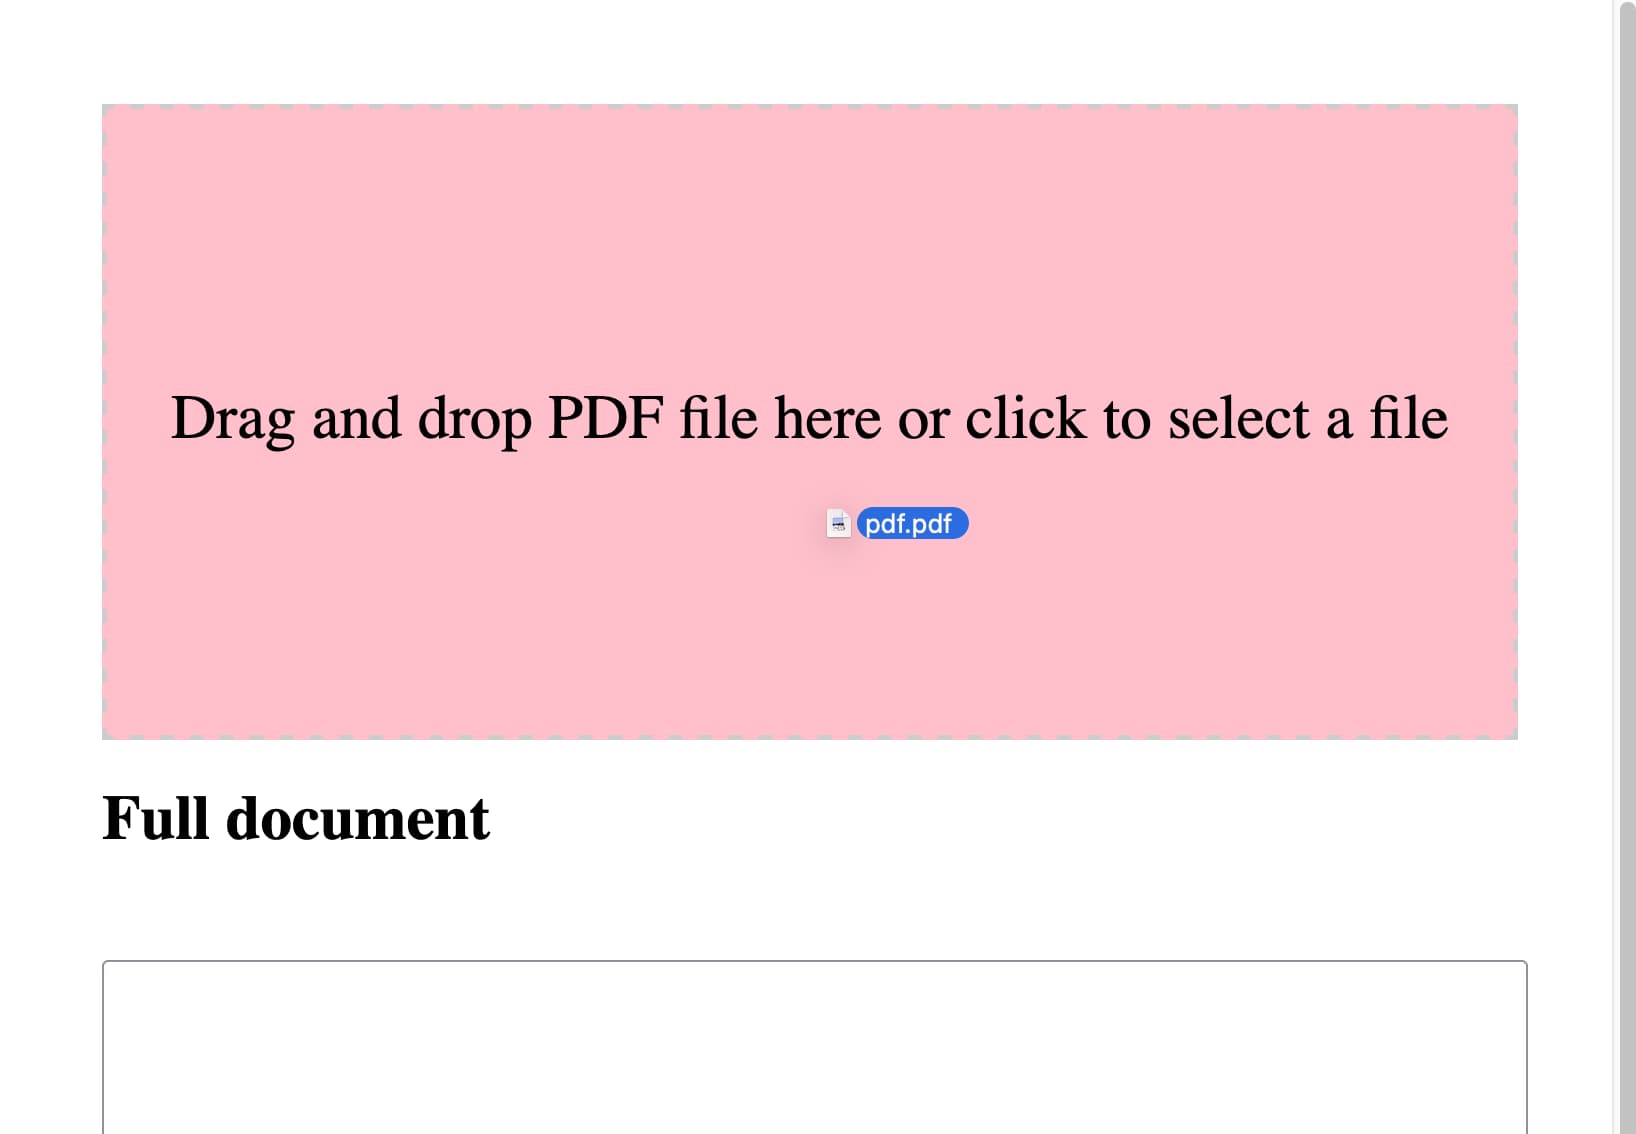 一个PDF文件被拖放到方框上，并变成了粉色。下方显示了标题Full document